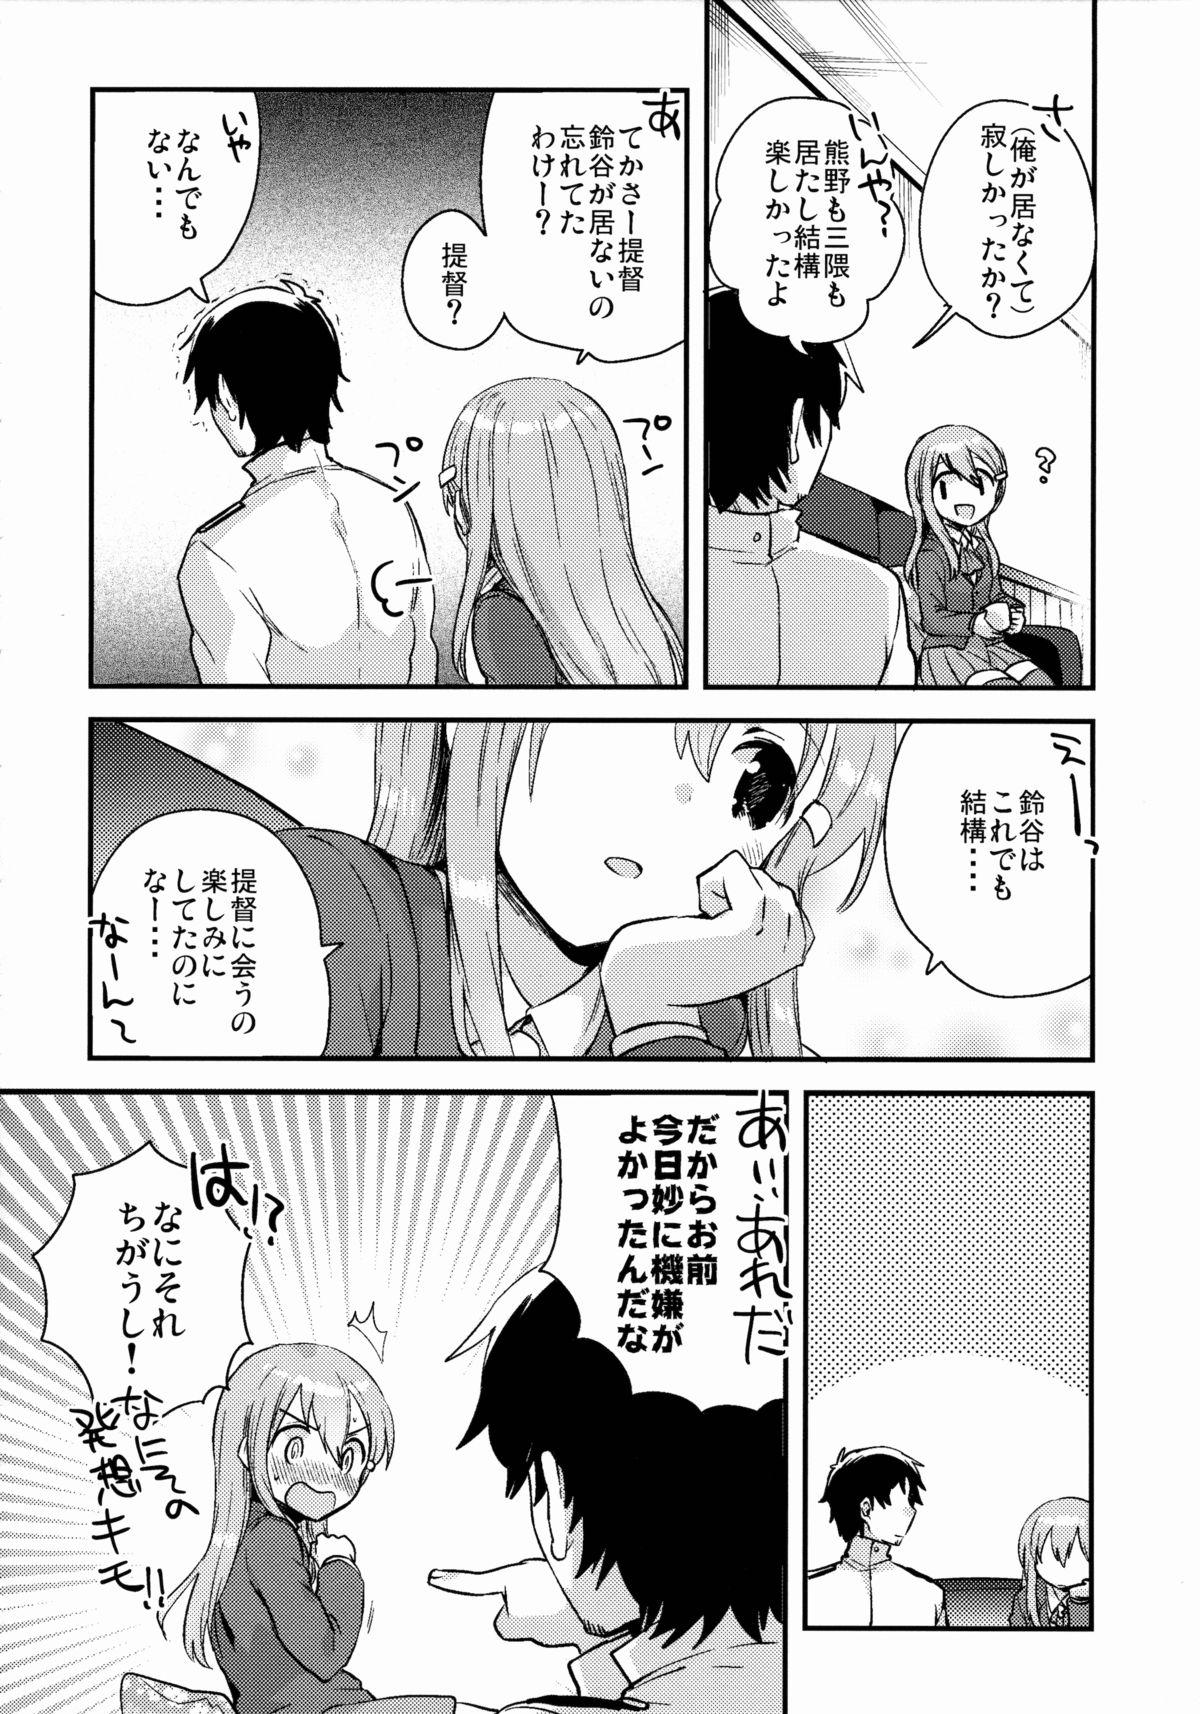 Licking Teitoku, Suzuya to Tsukiawanai? - Kantai collection Pink - Page 5